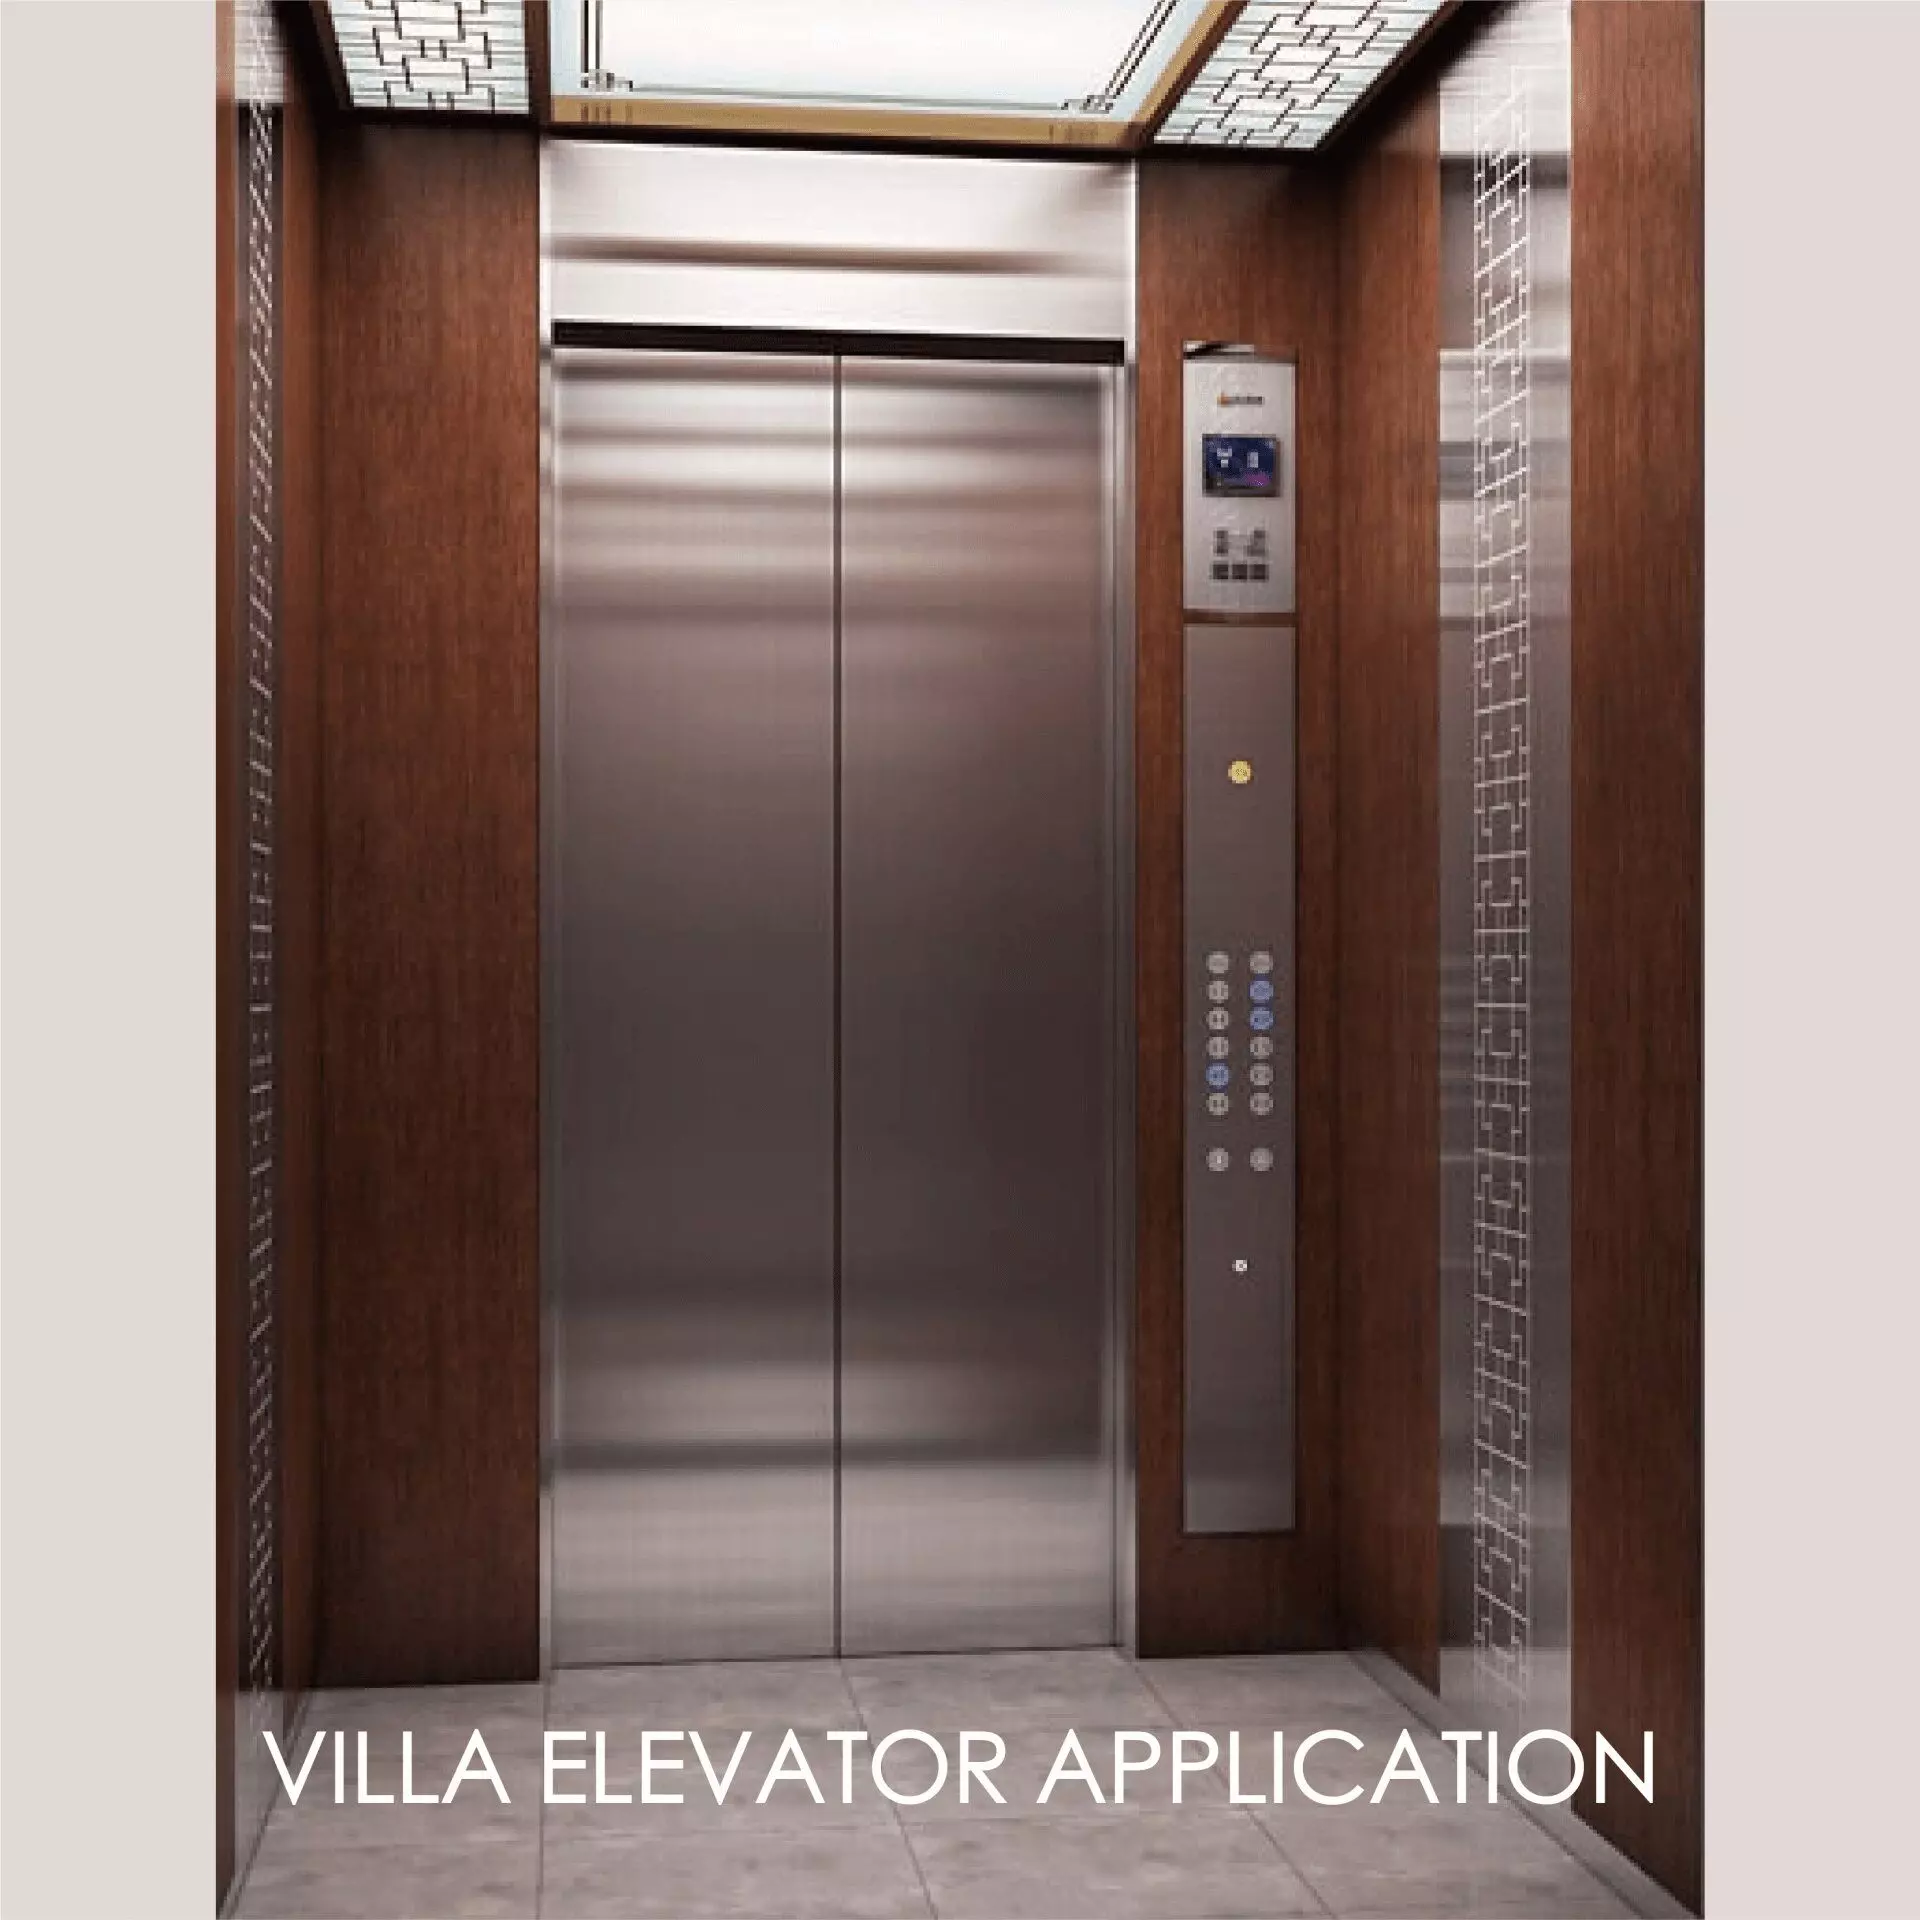 A liftajtó paneljének és belső tereinek díszítésére használt laminált fém esztétikus megjelenést és tartósságot teremthet.